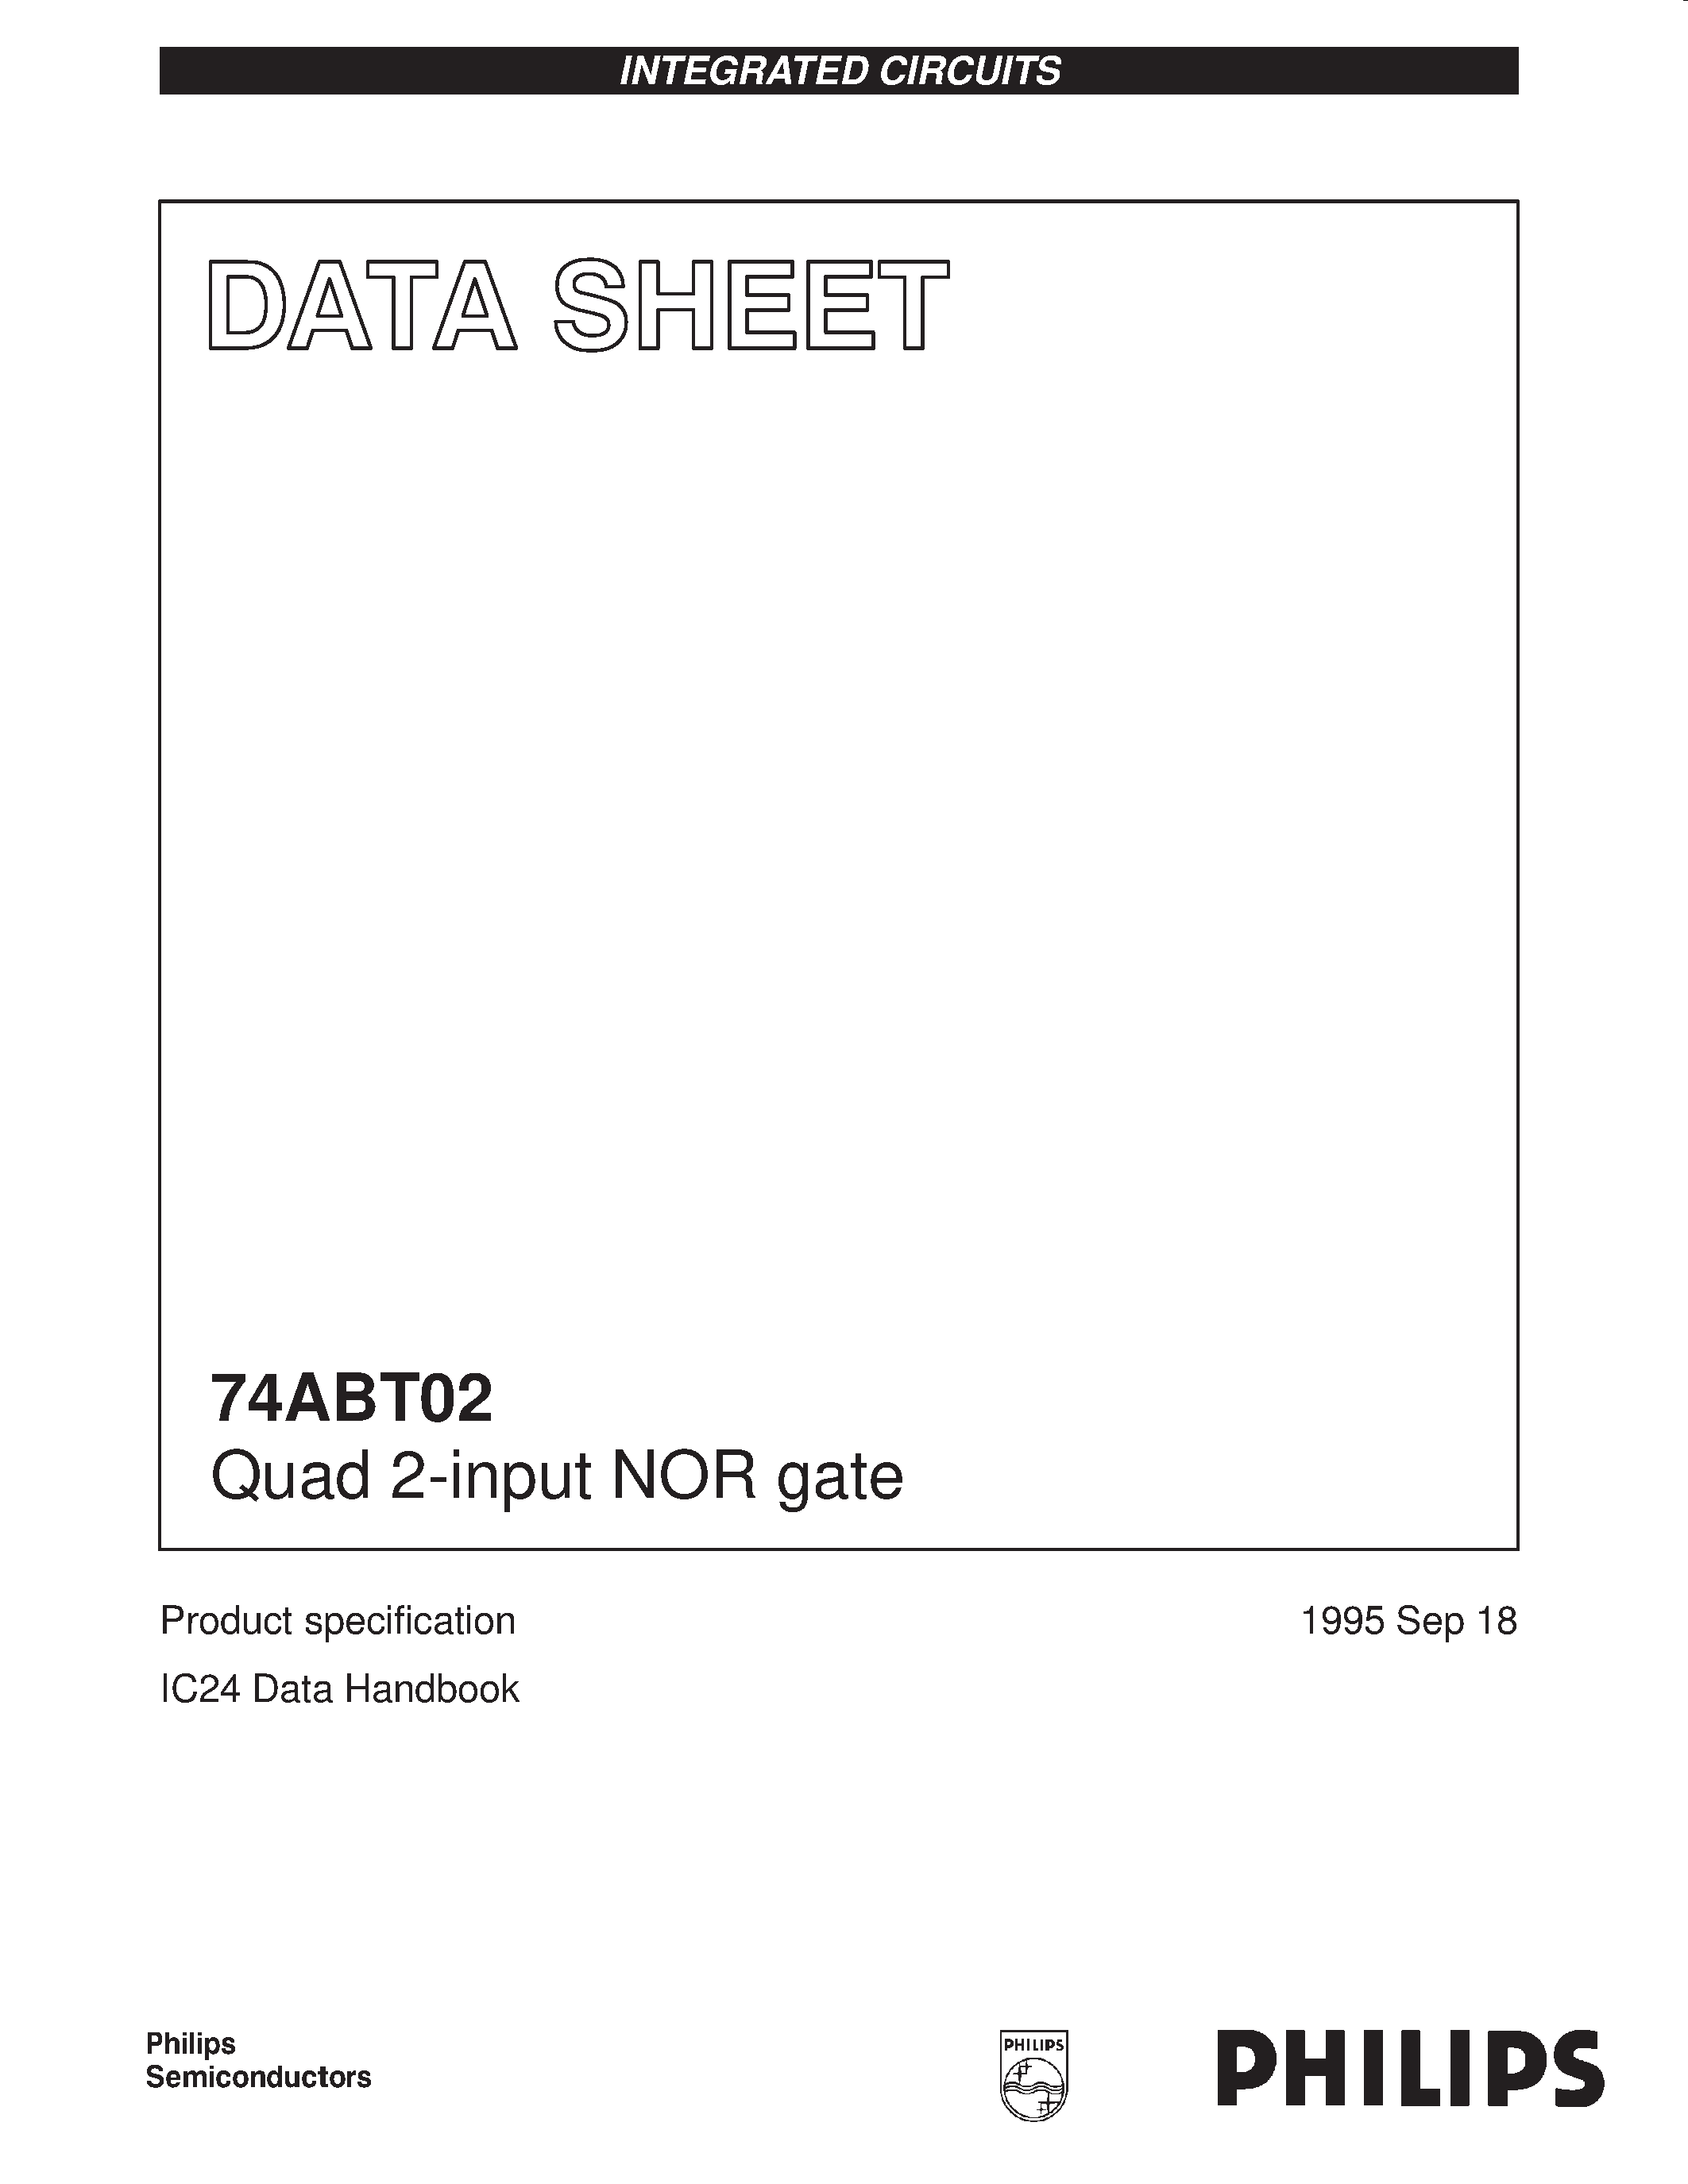 Даташит 74ABT02DB - Quad 2-input NOR gate страница 1